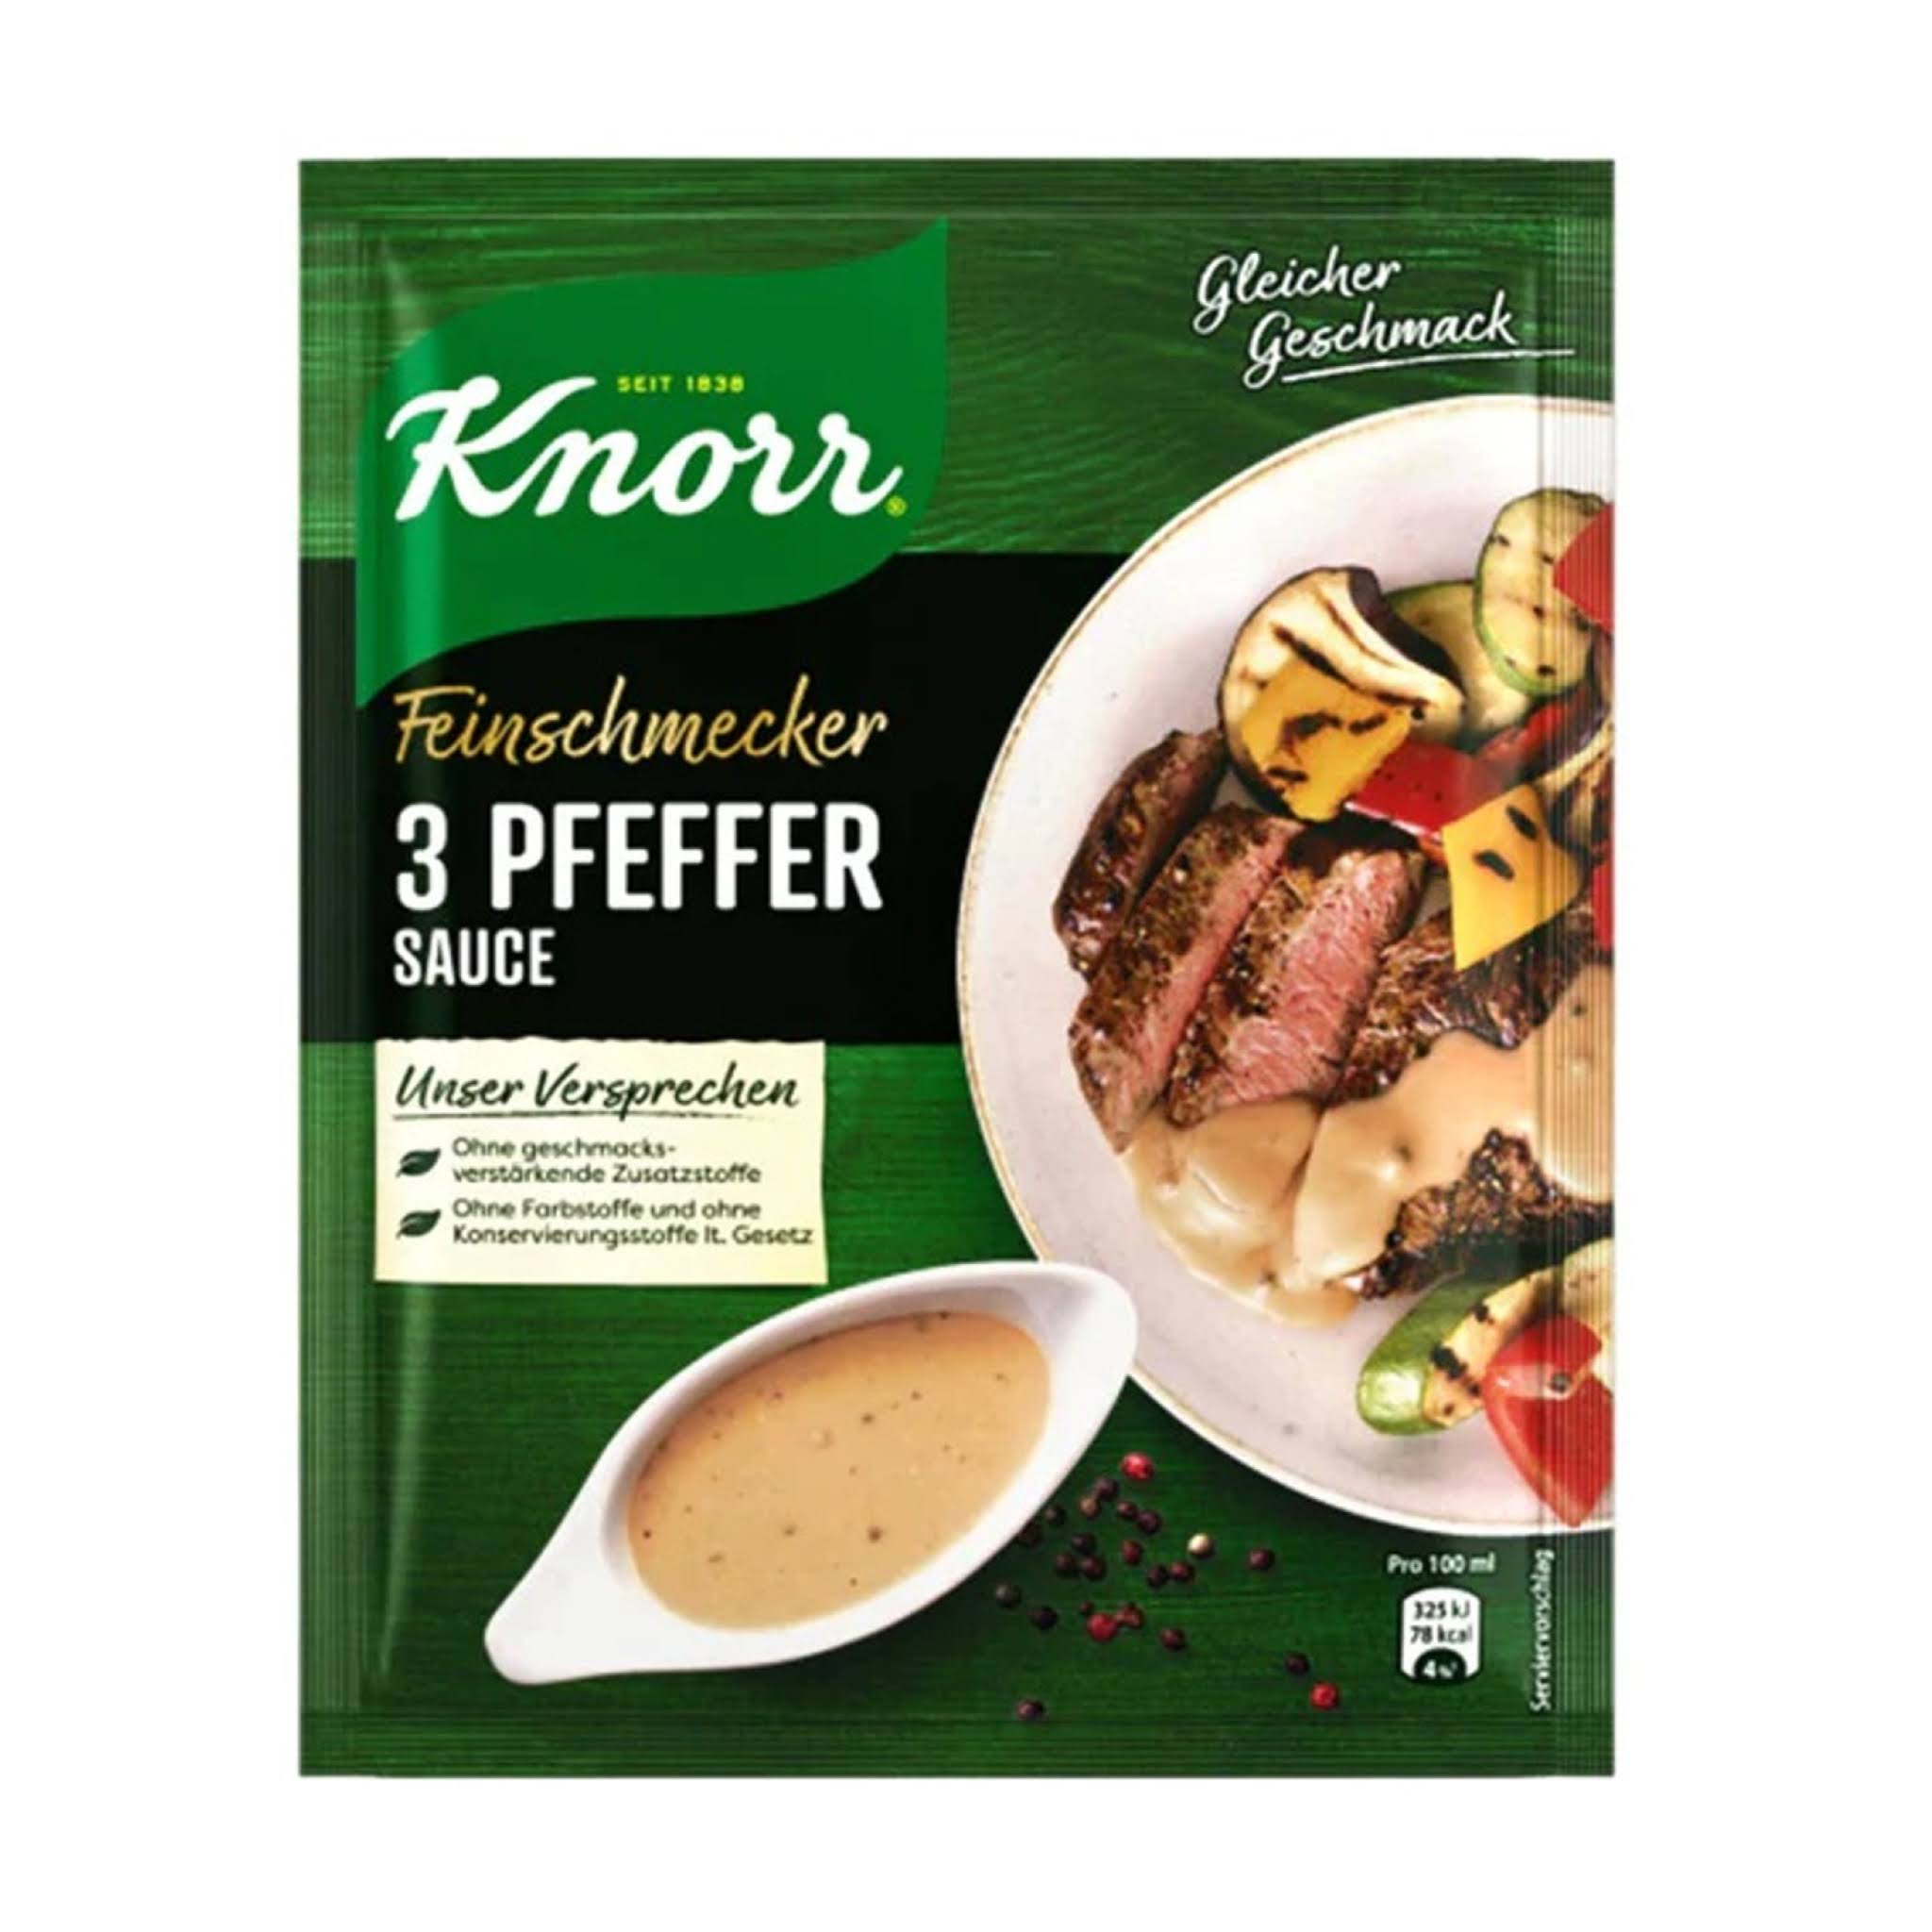 Knorr Feinschmecker 3 Pepper Sauce